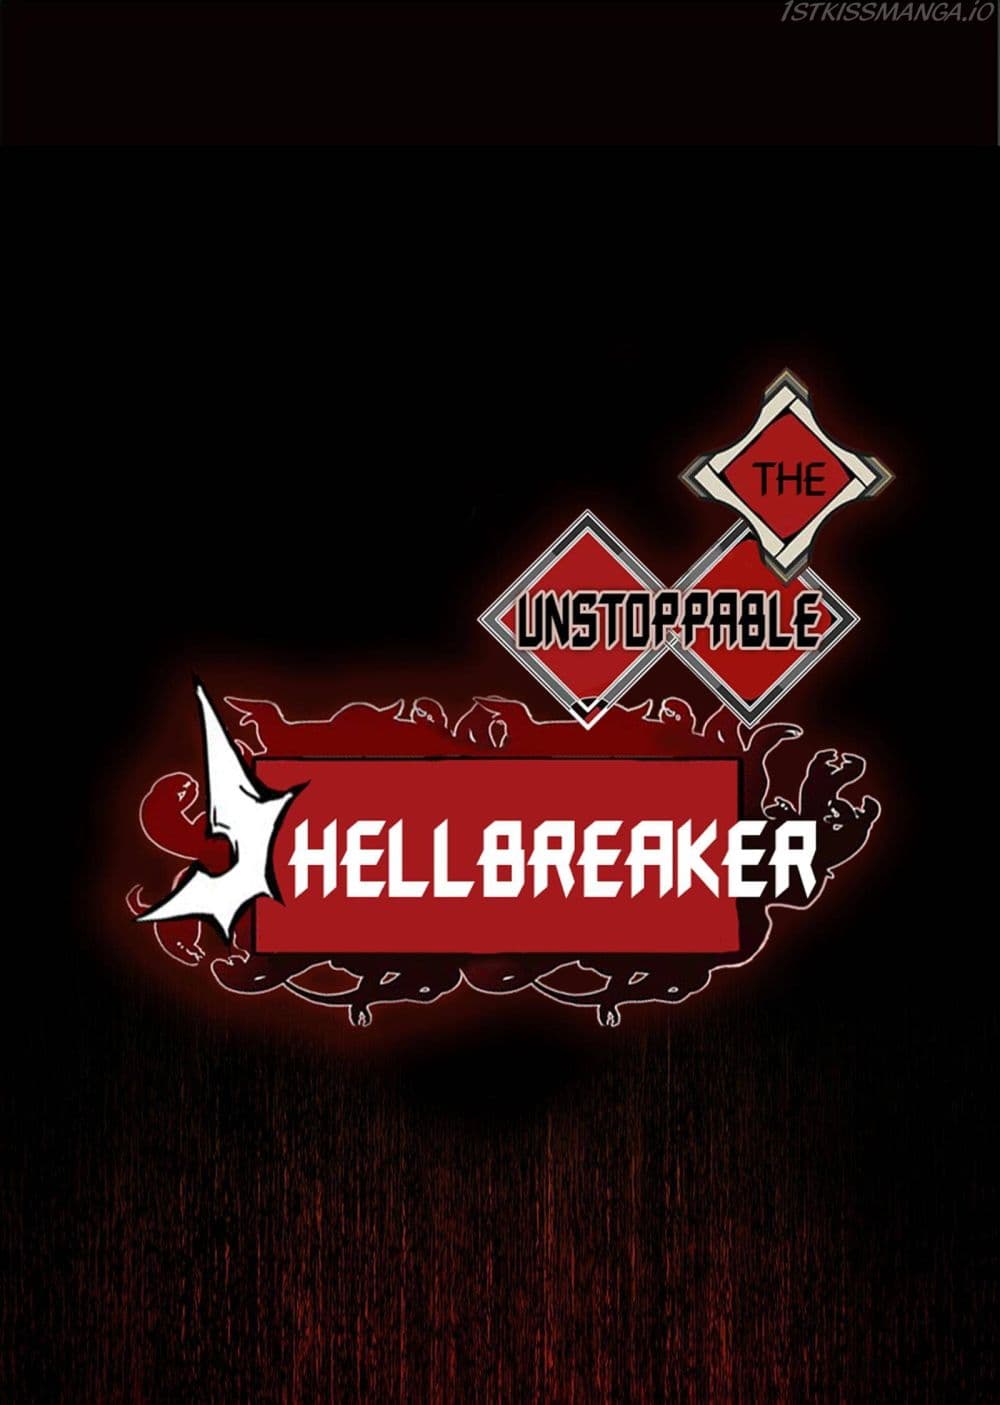 The Unstoppable Hellbreaker 19-19